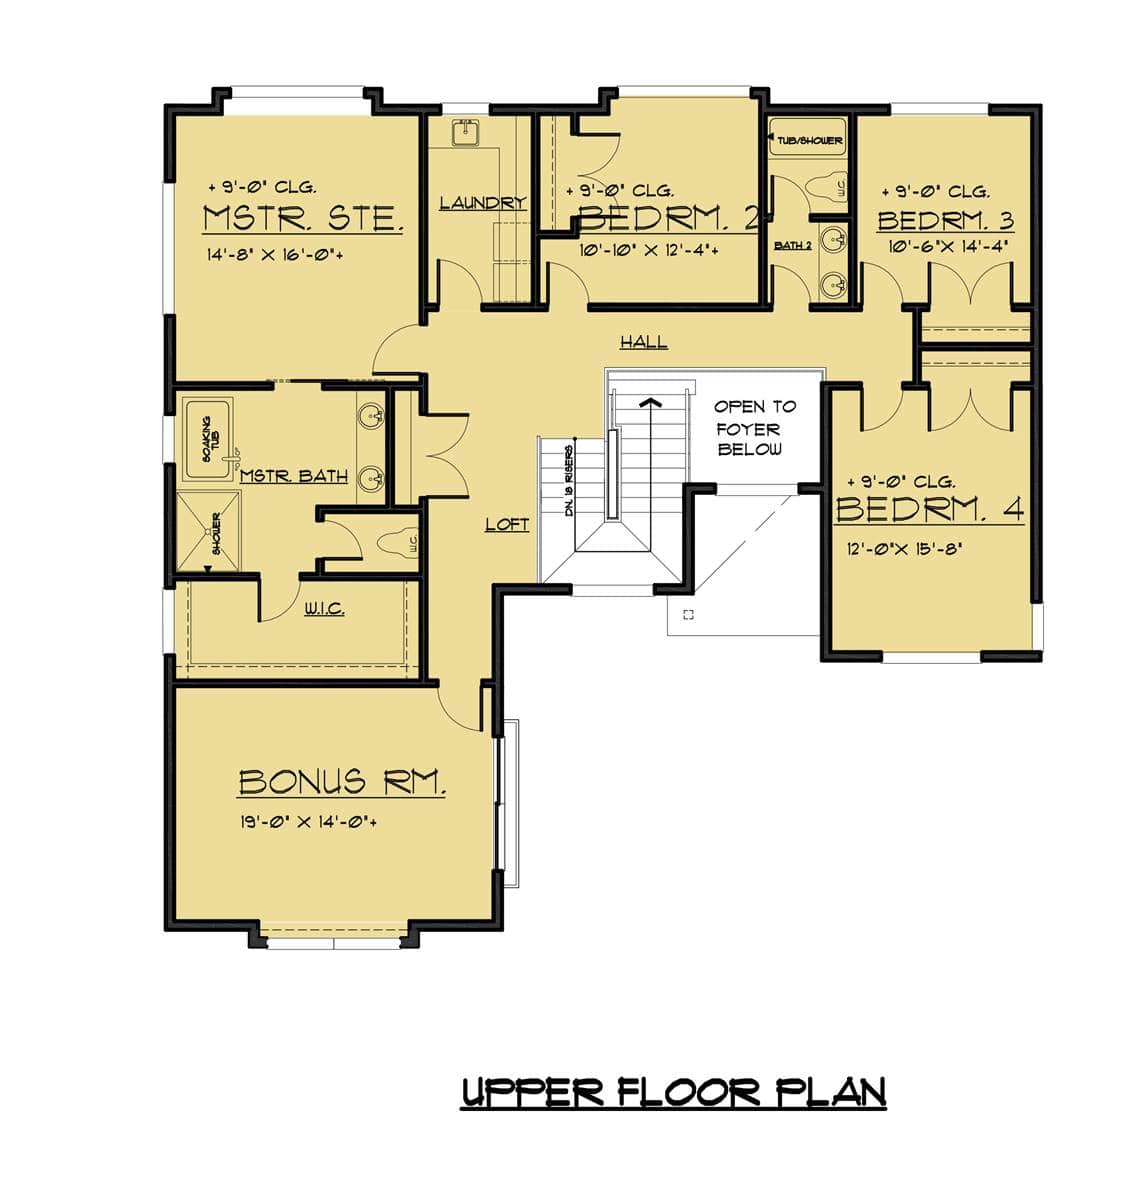 二层平面图有一个大的奖励房间和四间卧室，包括主要套房。